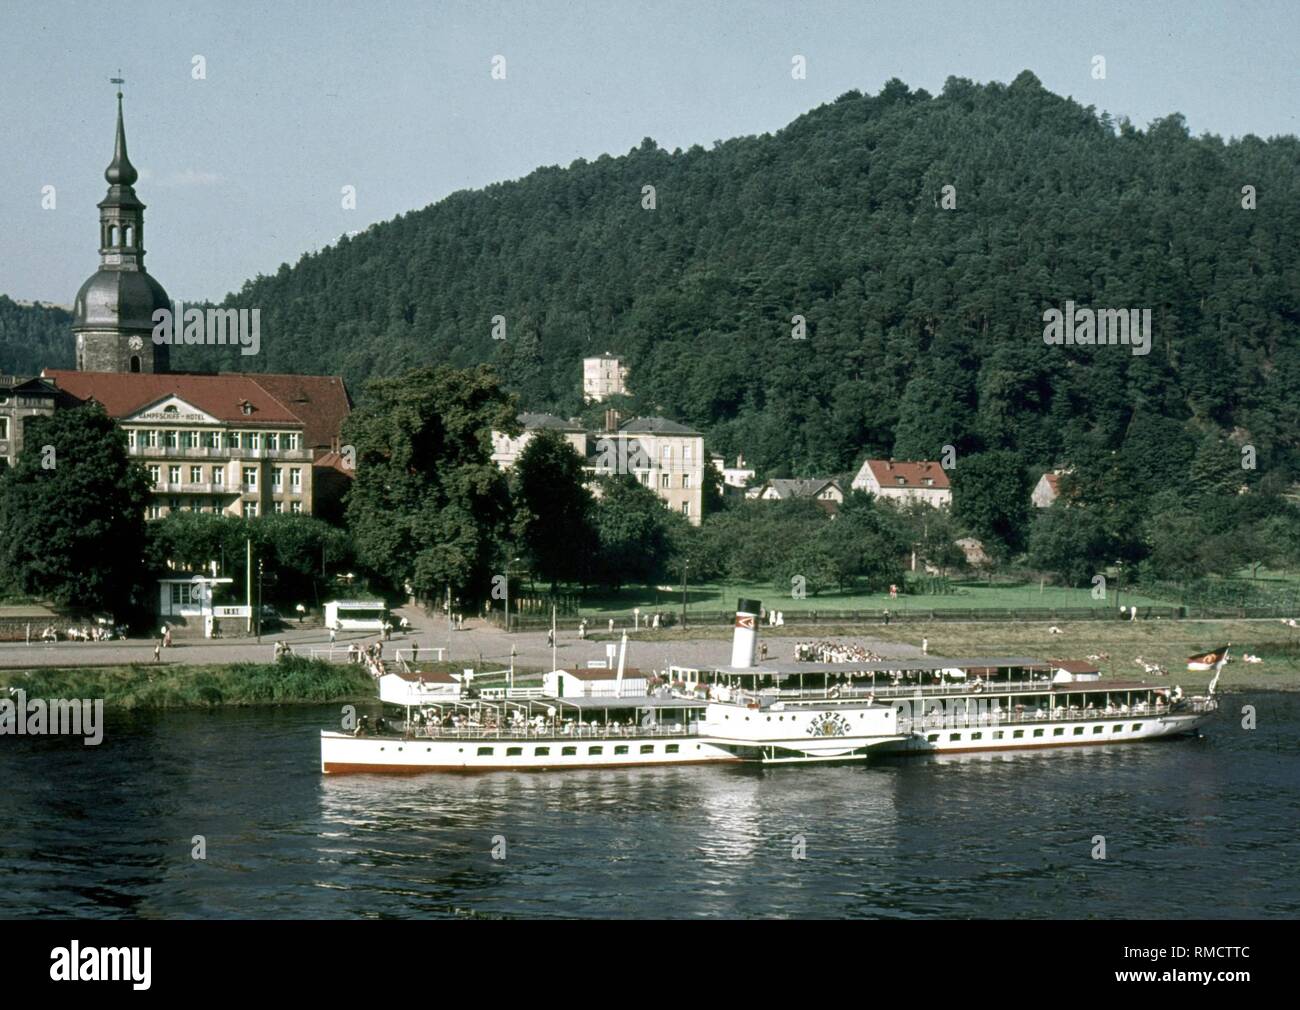 Tretboot "Leipzig" der Weisse Flotte auf seinem Weg flussabwärts in Richtung Dresden Auf der Elbe in der Nähe von Heidenau. Auf der Bank auf der linken Seite, das Rathaus von Bad Schandau. Foto vom 1. Juli 1971. Stockfoto